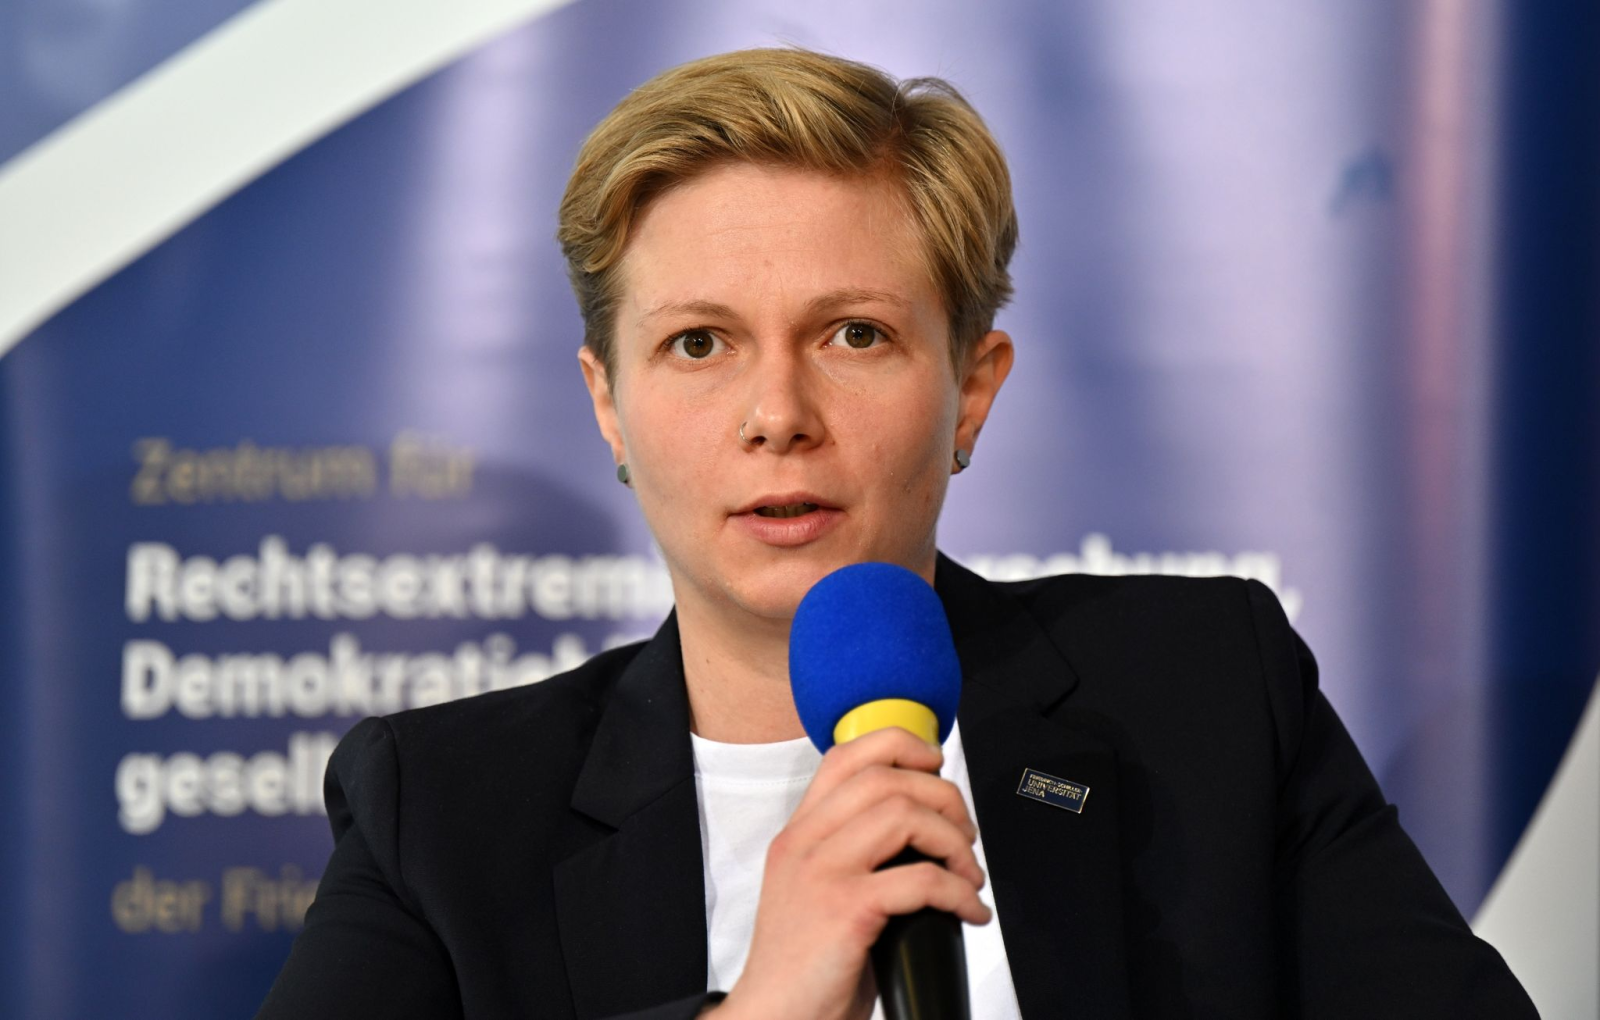 Cynthia Möller, Geschäftsführerin beim Zentrum für Rechtsextremismusforschung, Demokratiebildung und gesellschaftliche Integration (KomRex).